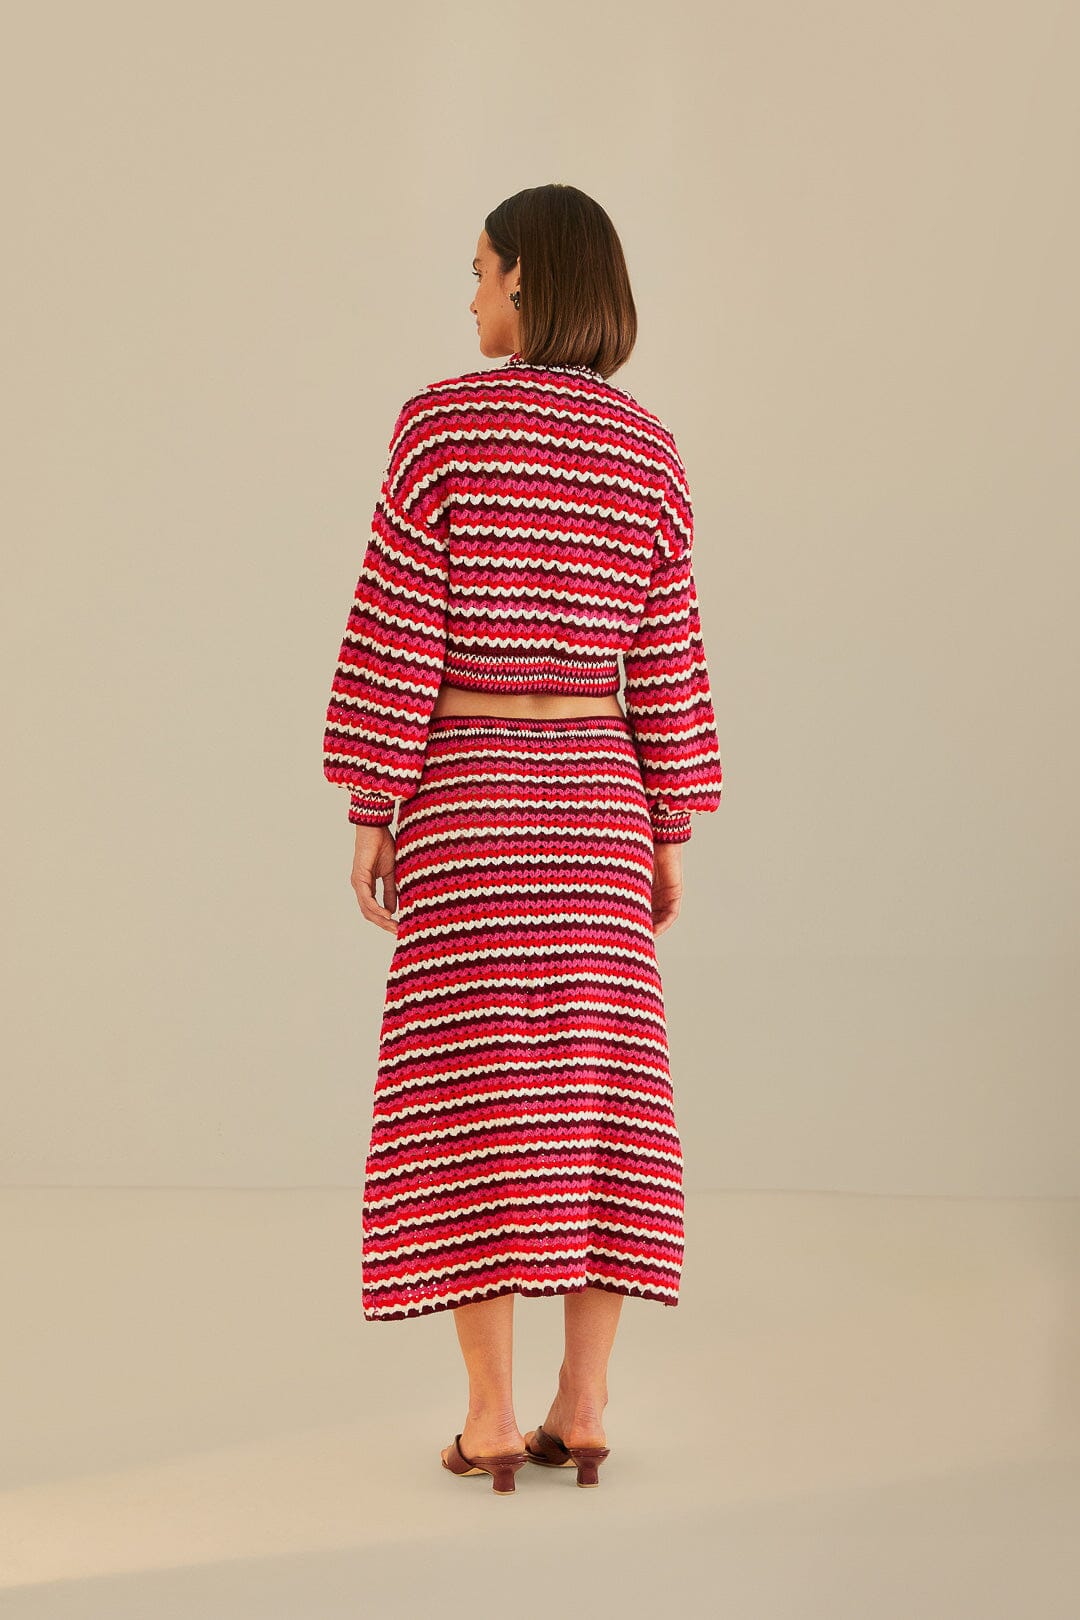 Colorful Stripes Crochet Skirt